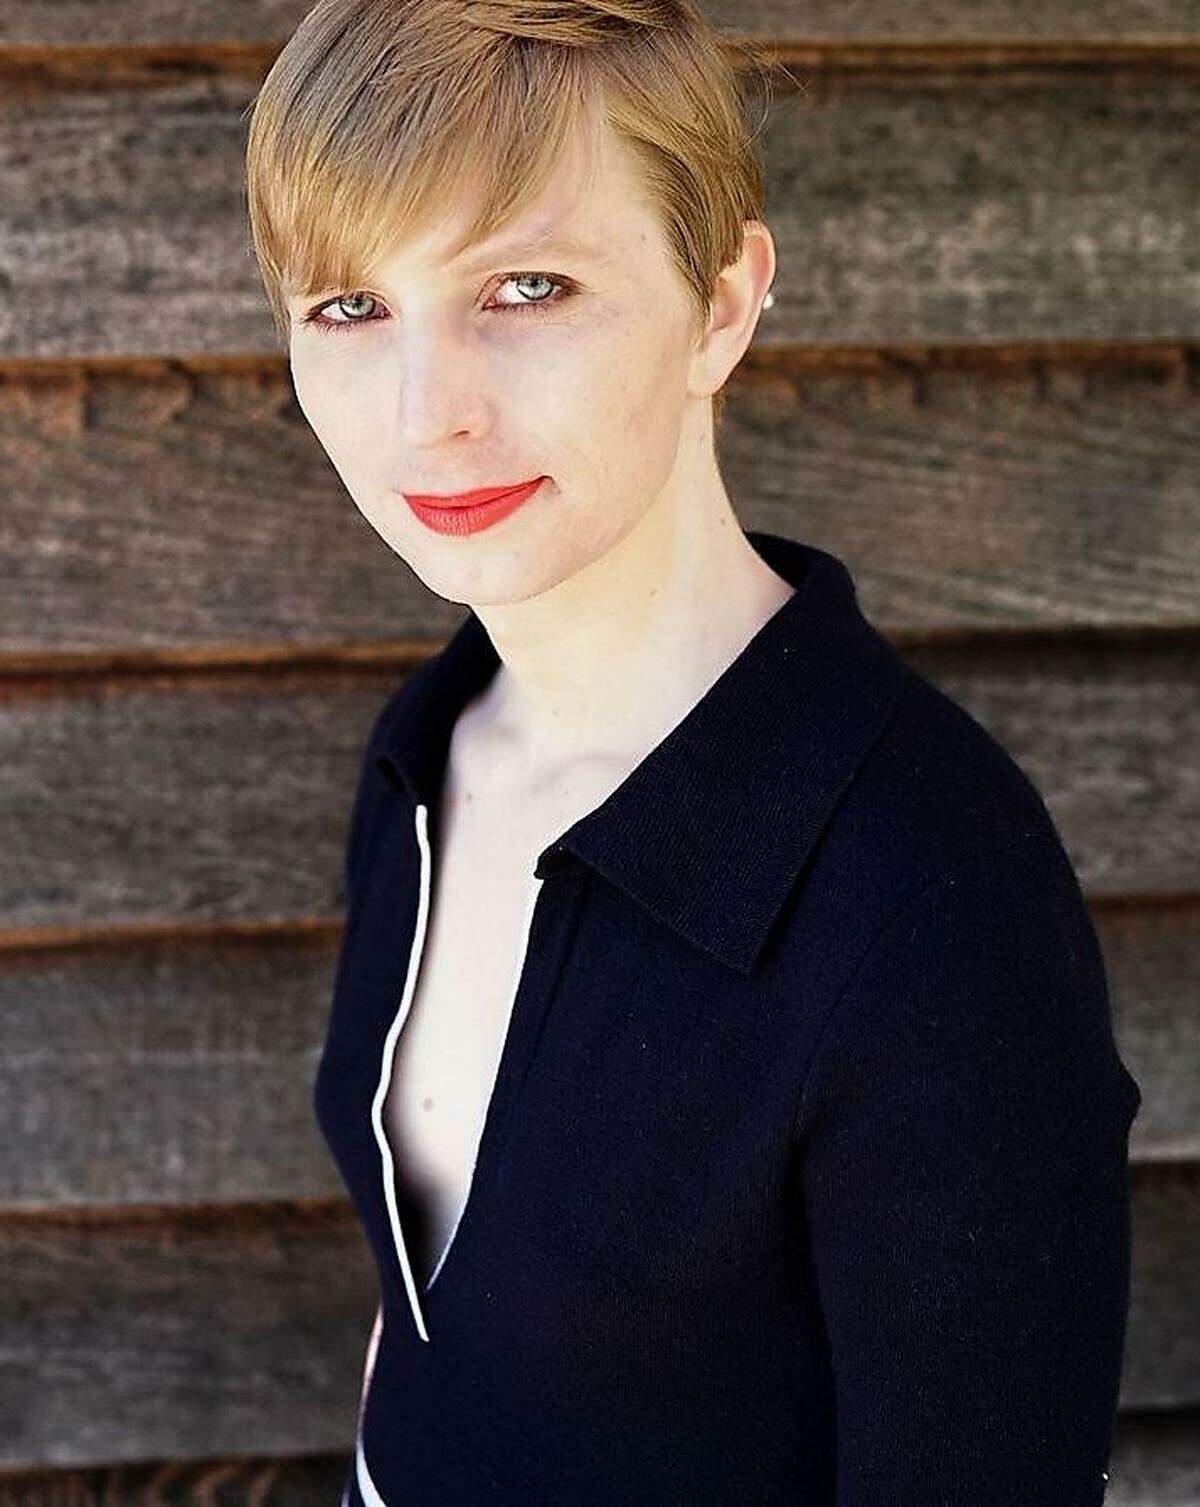 Seit Mai 2017 lebt Chelsea Manning wieder in Freiheit: Der damalige US-Präsident Barack Obama begnadigte sie im Jänner 2017. Die Haftdauer verkürzte sich so auf knapp sieben Jahre.